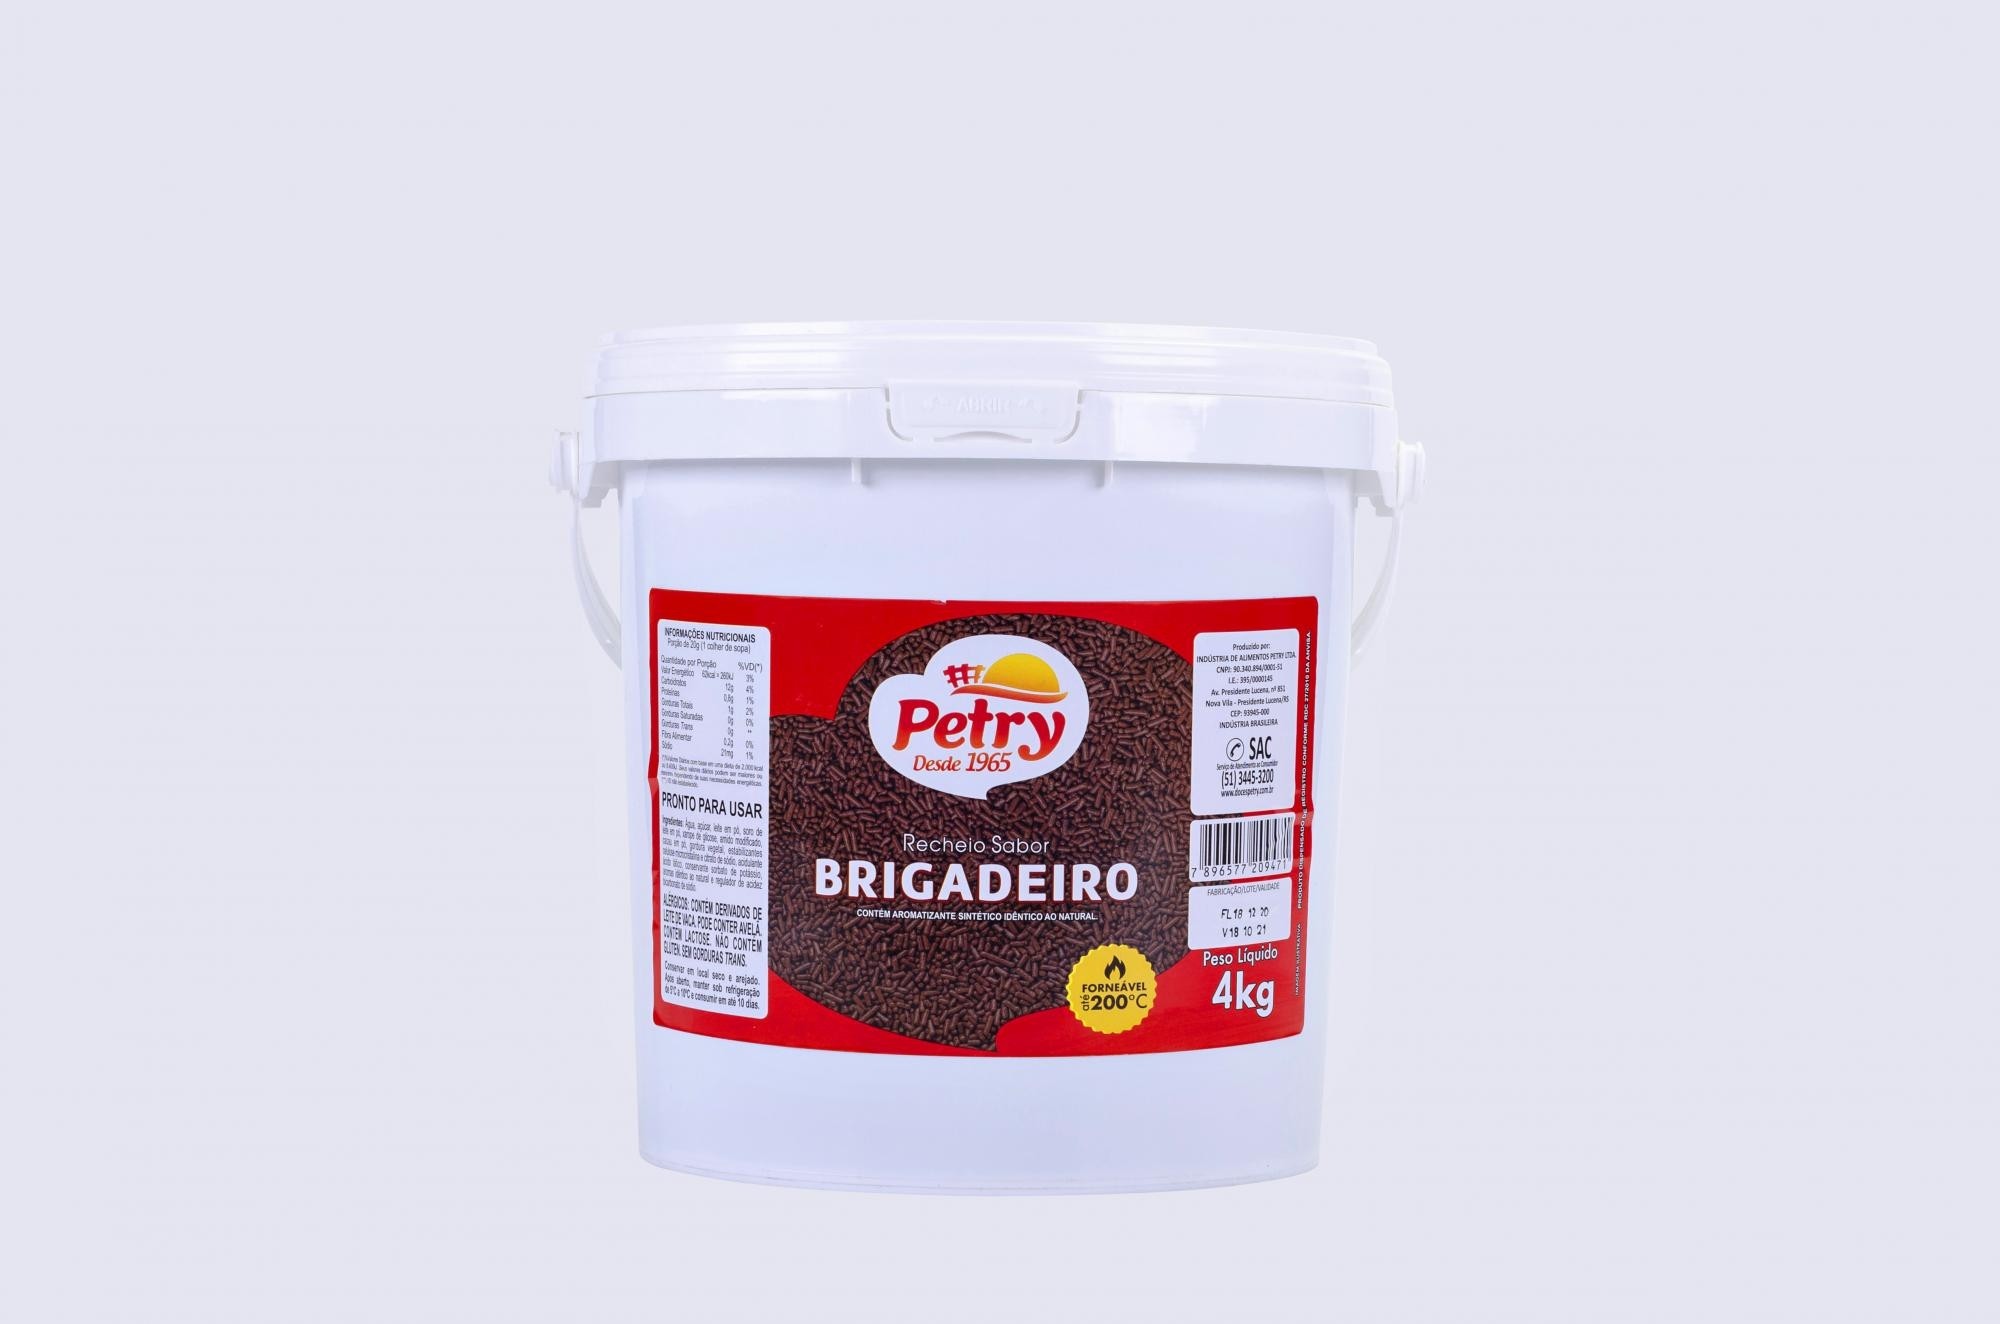 BRIGADEIRO  PETRY  1,8KG                                                                            